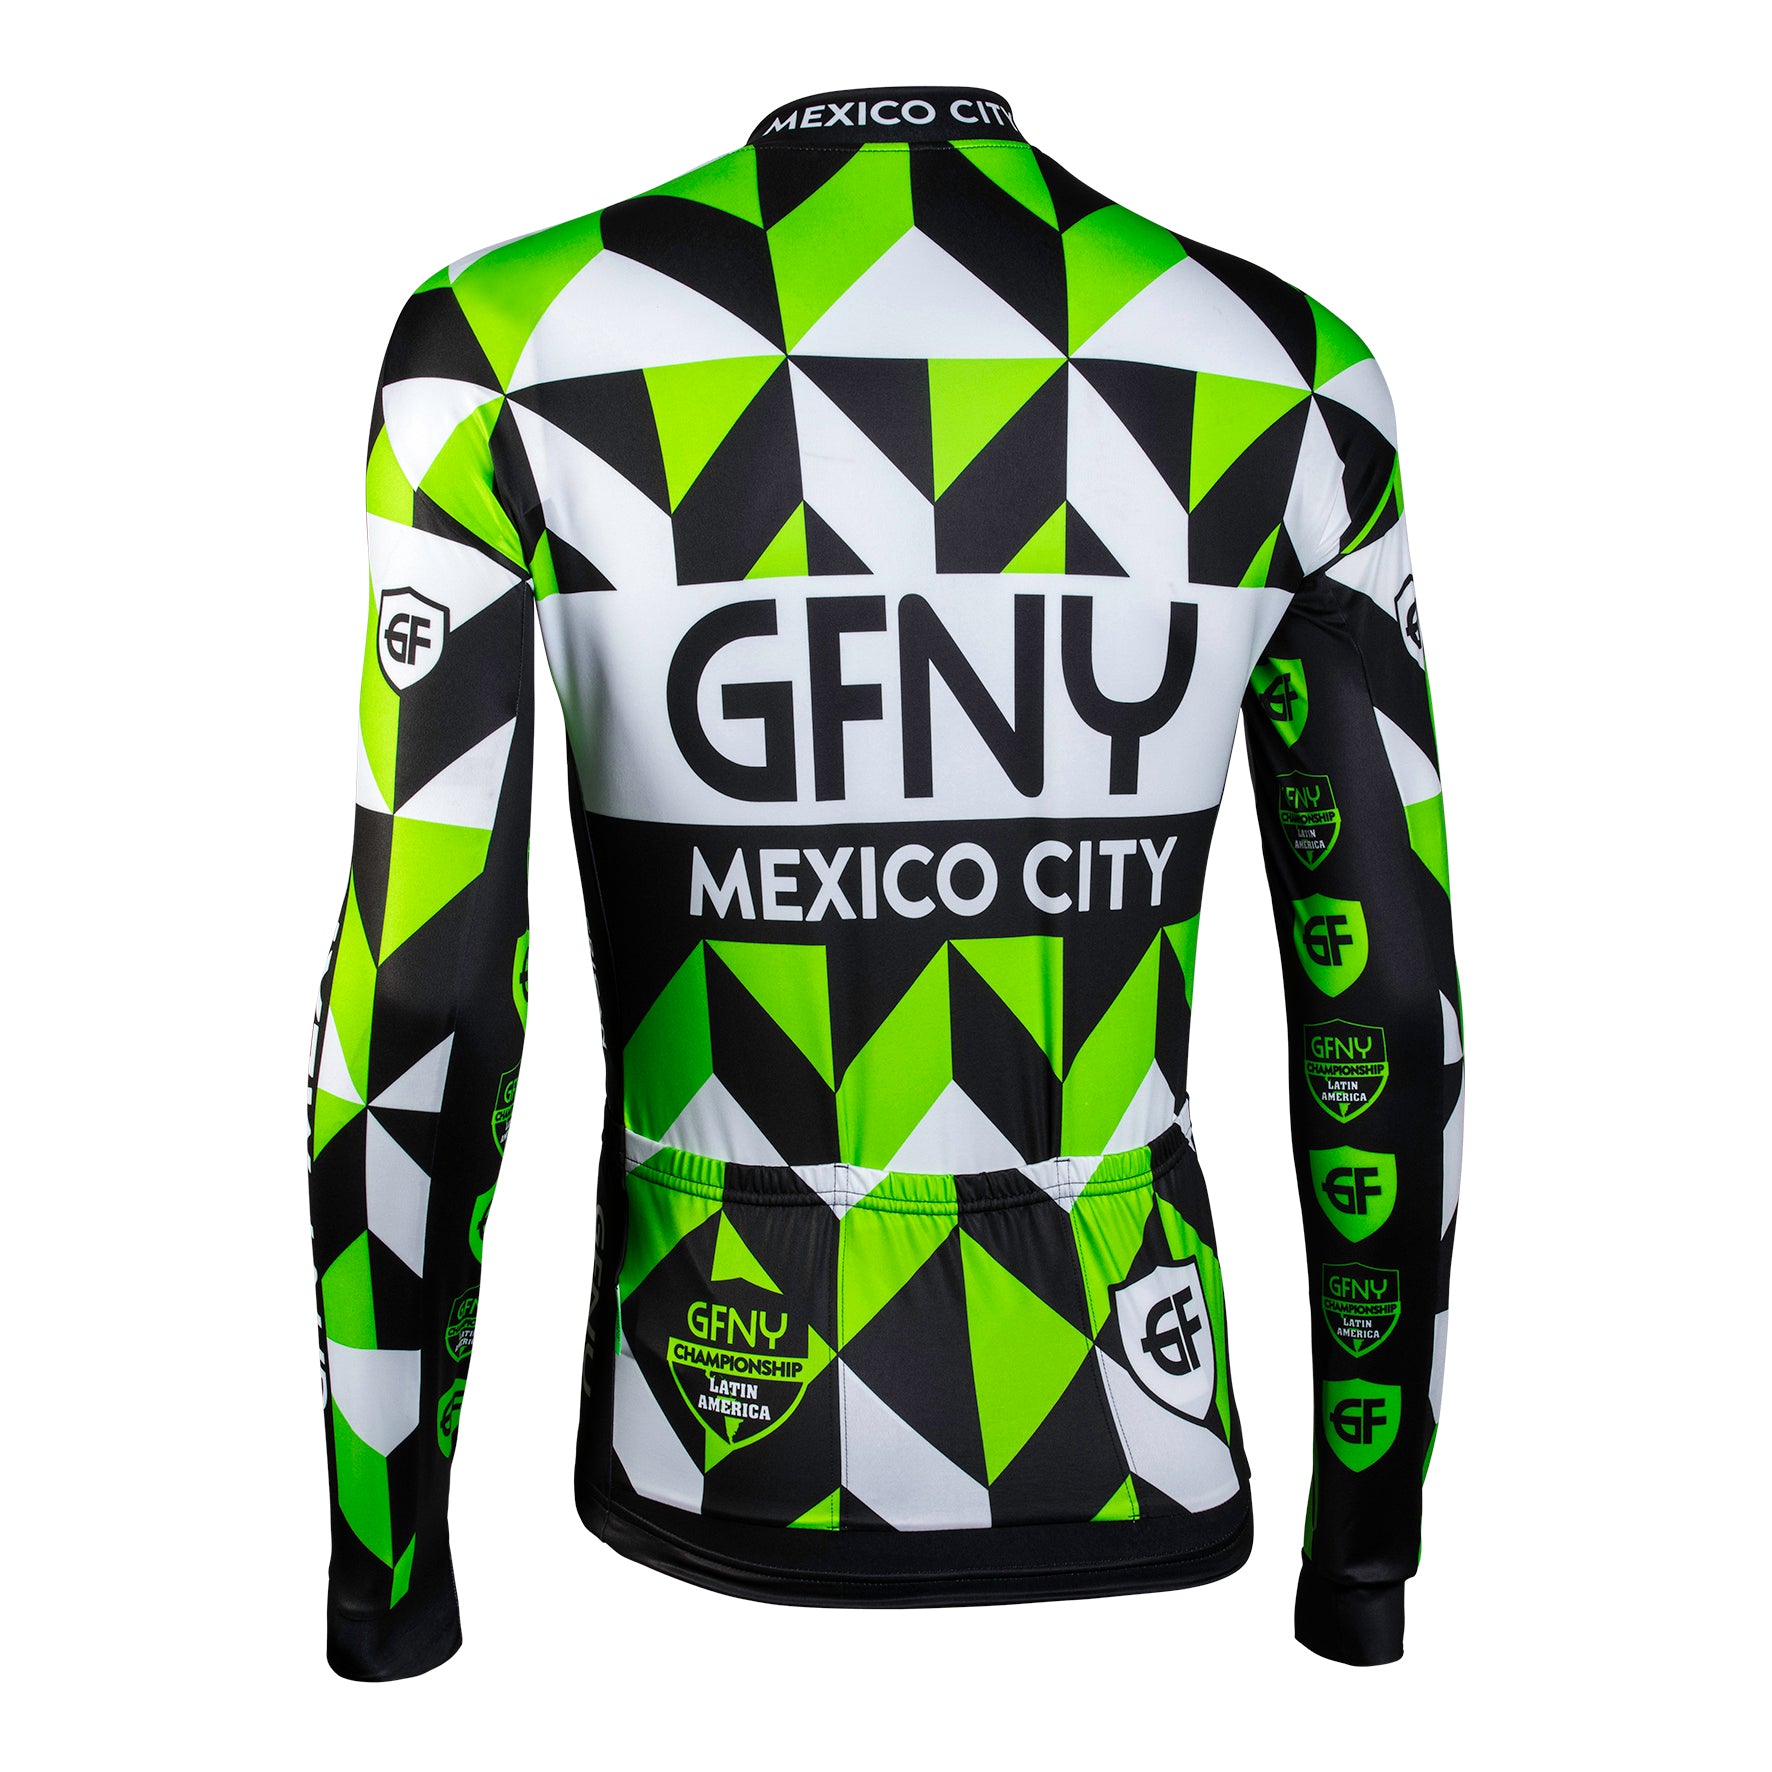 GFNY Mexico City Long Sleeve Jersey